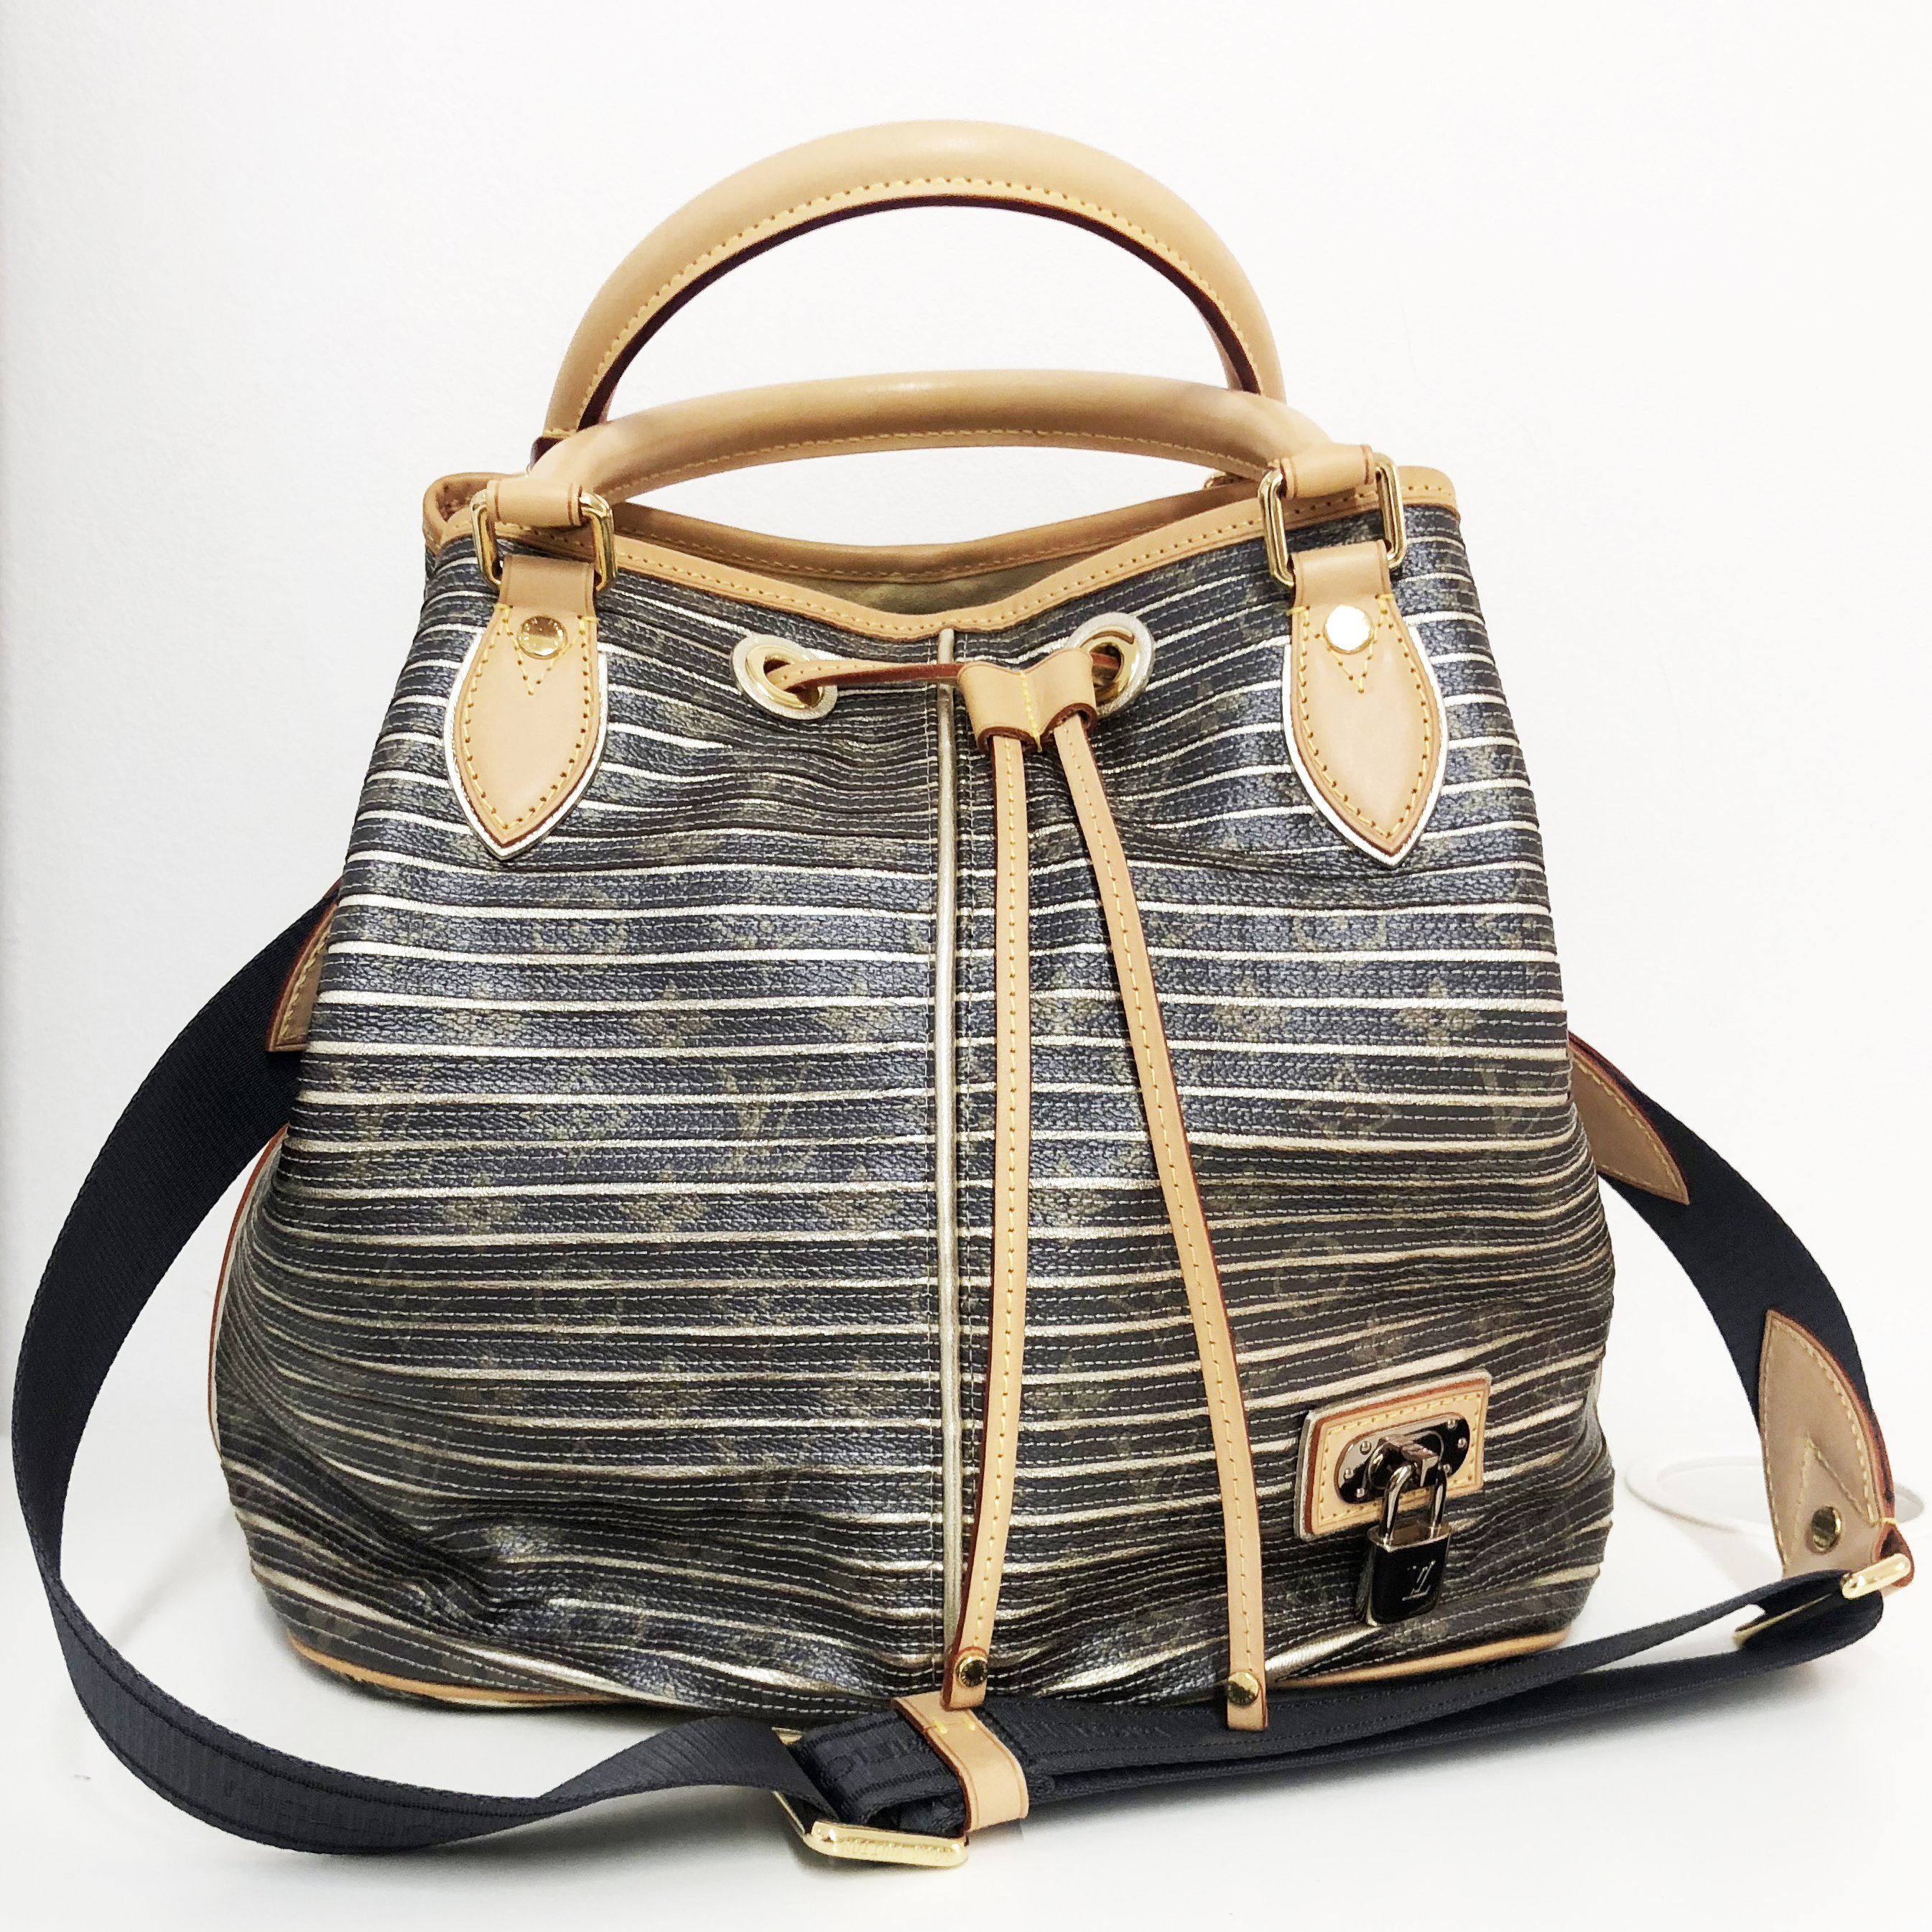 The Louis Vuitton Kaki Monogram Eden Neo Bag (2010 Collection) – Garderobe